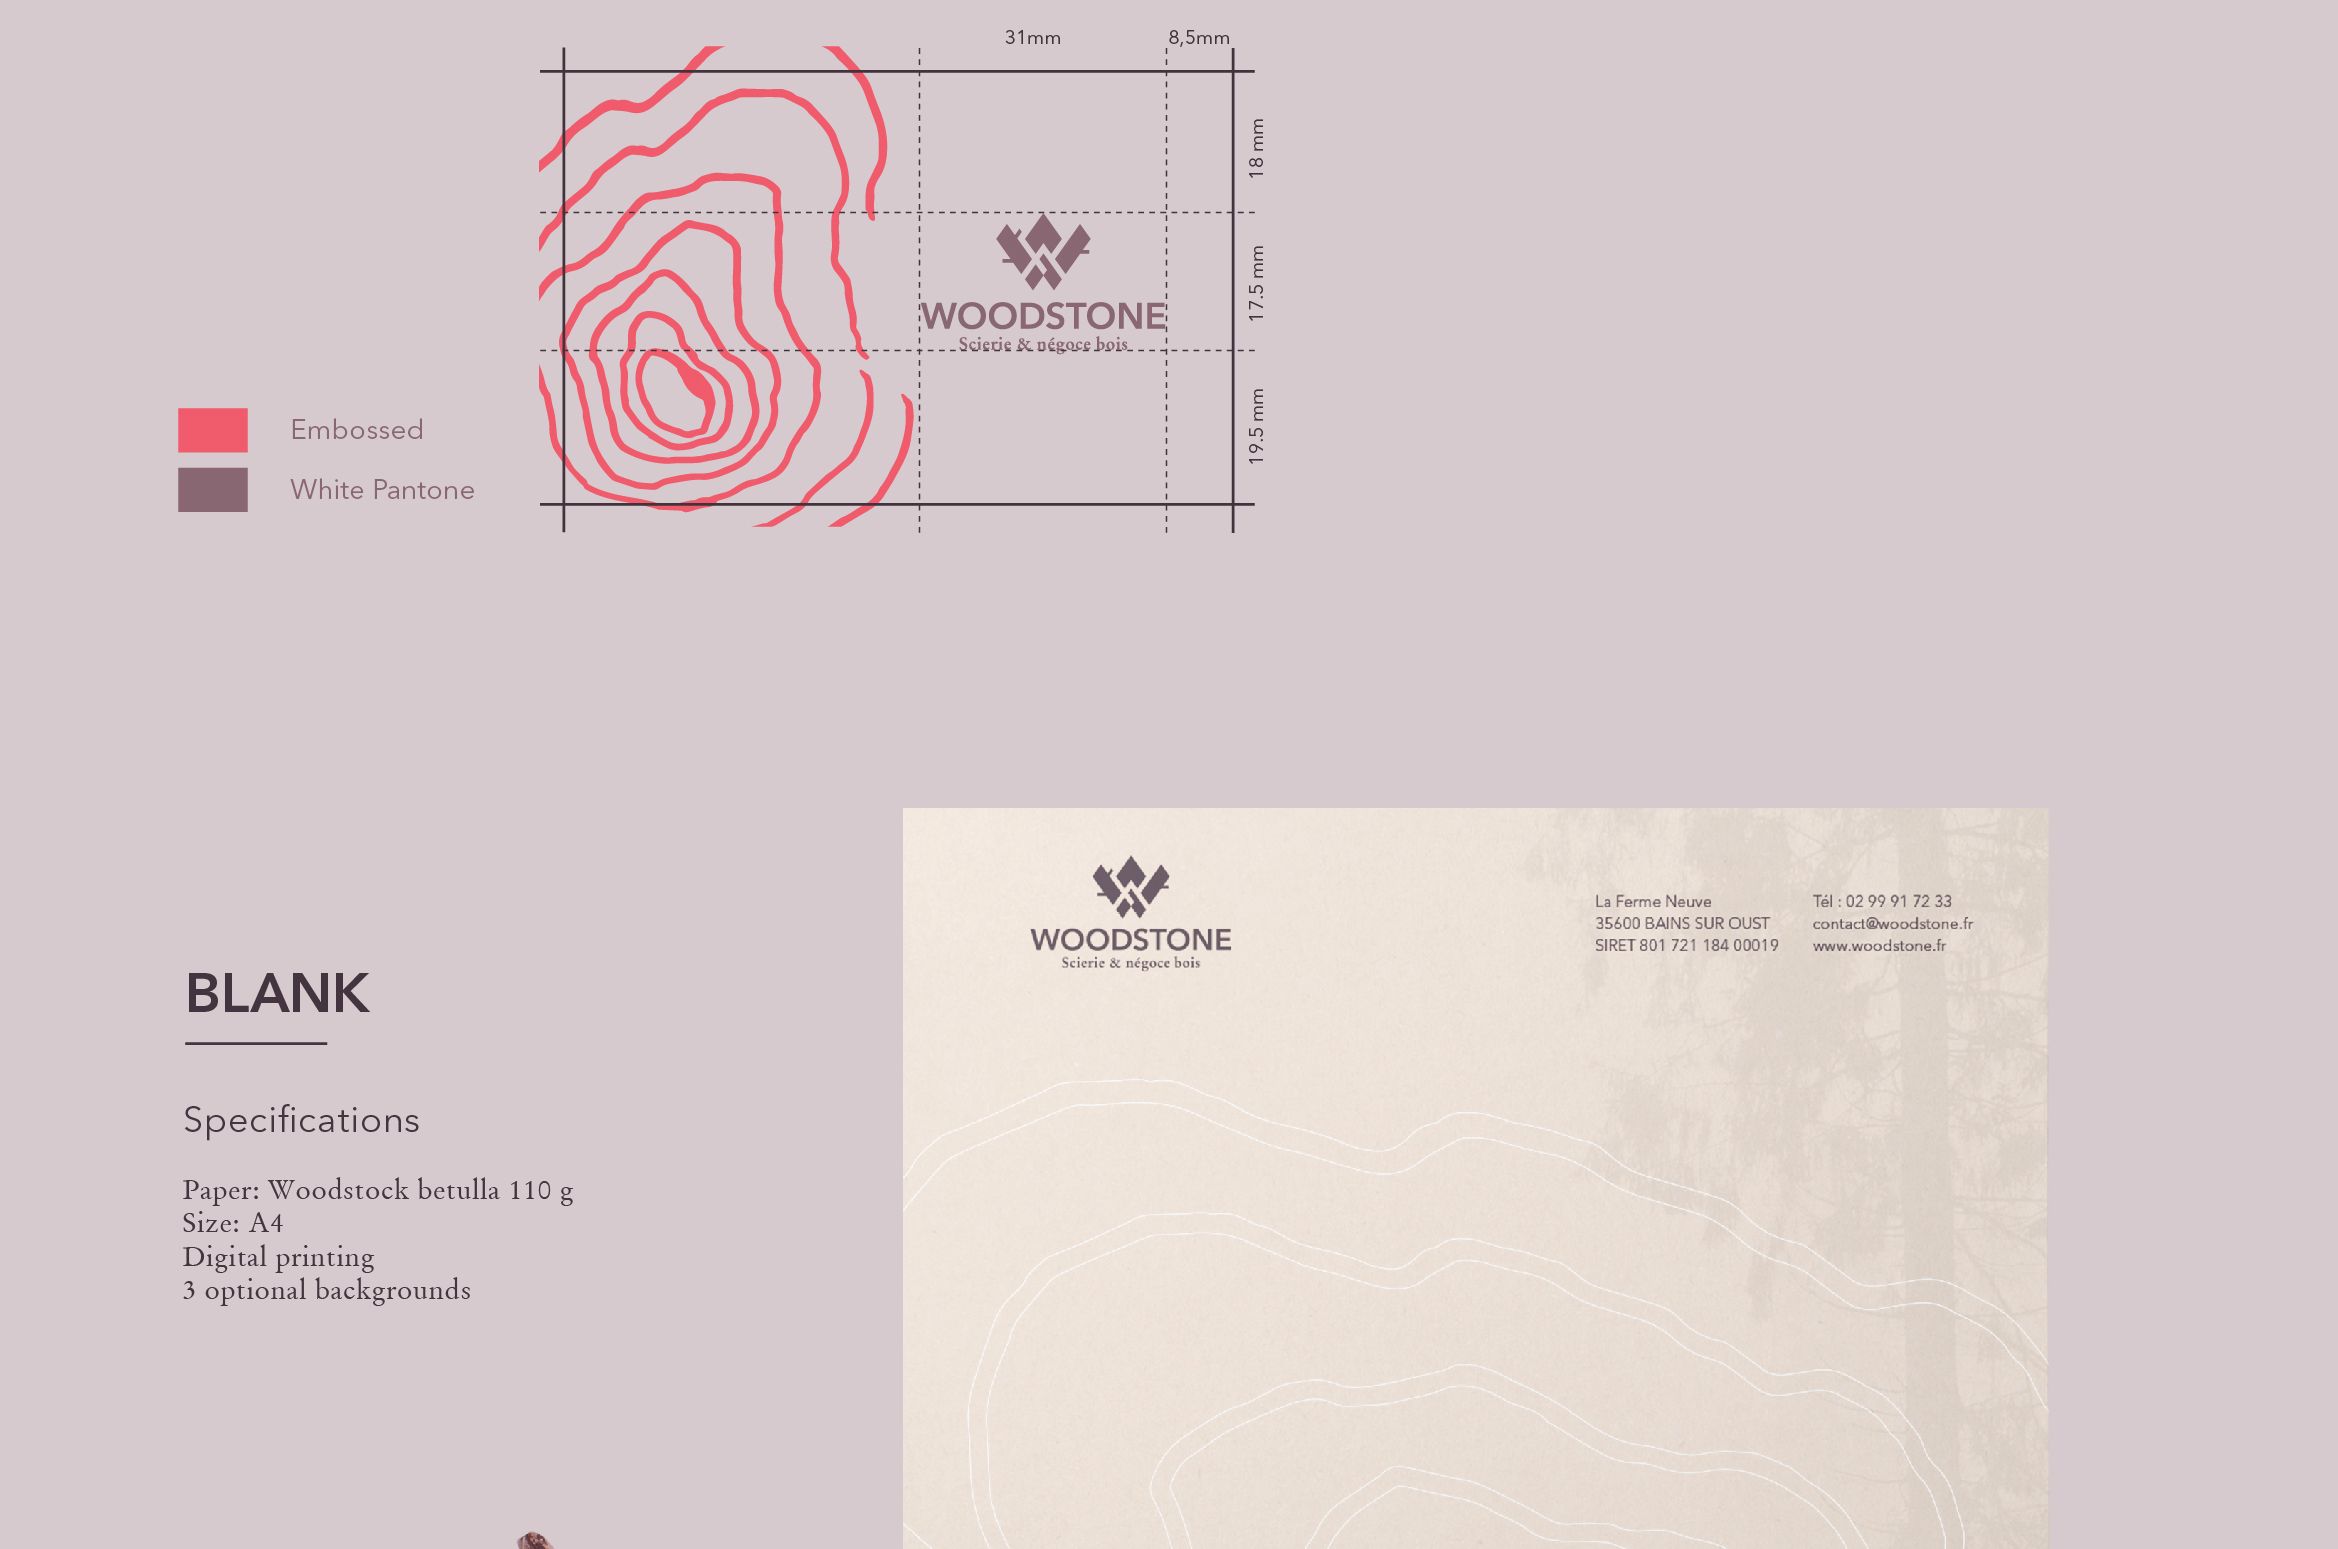 Woodstone logo and identity design